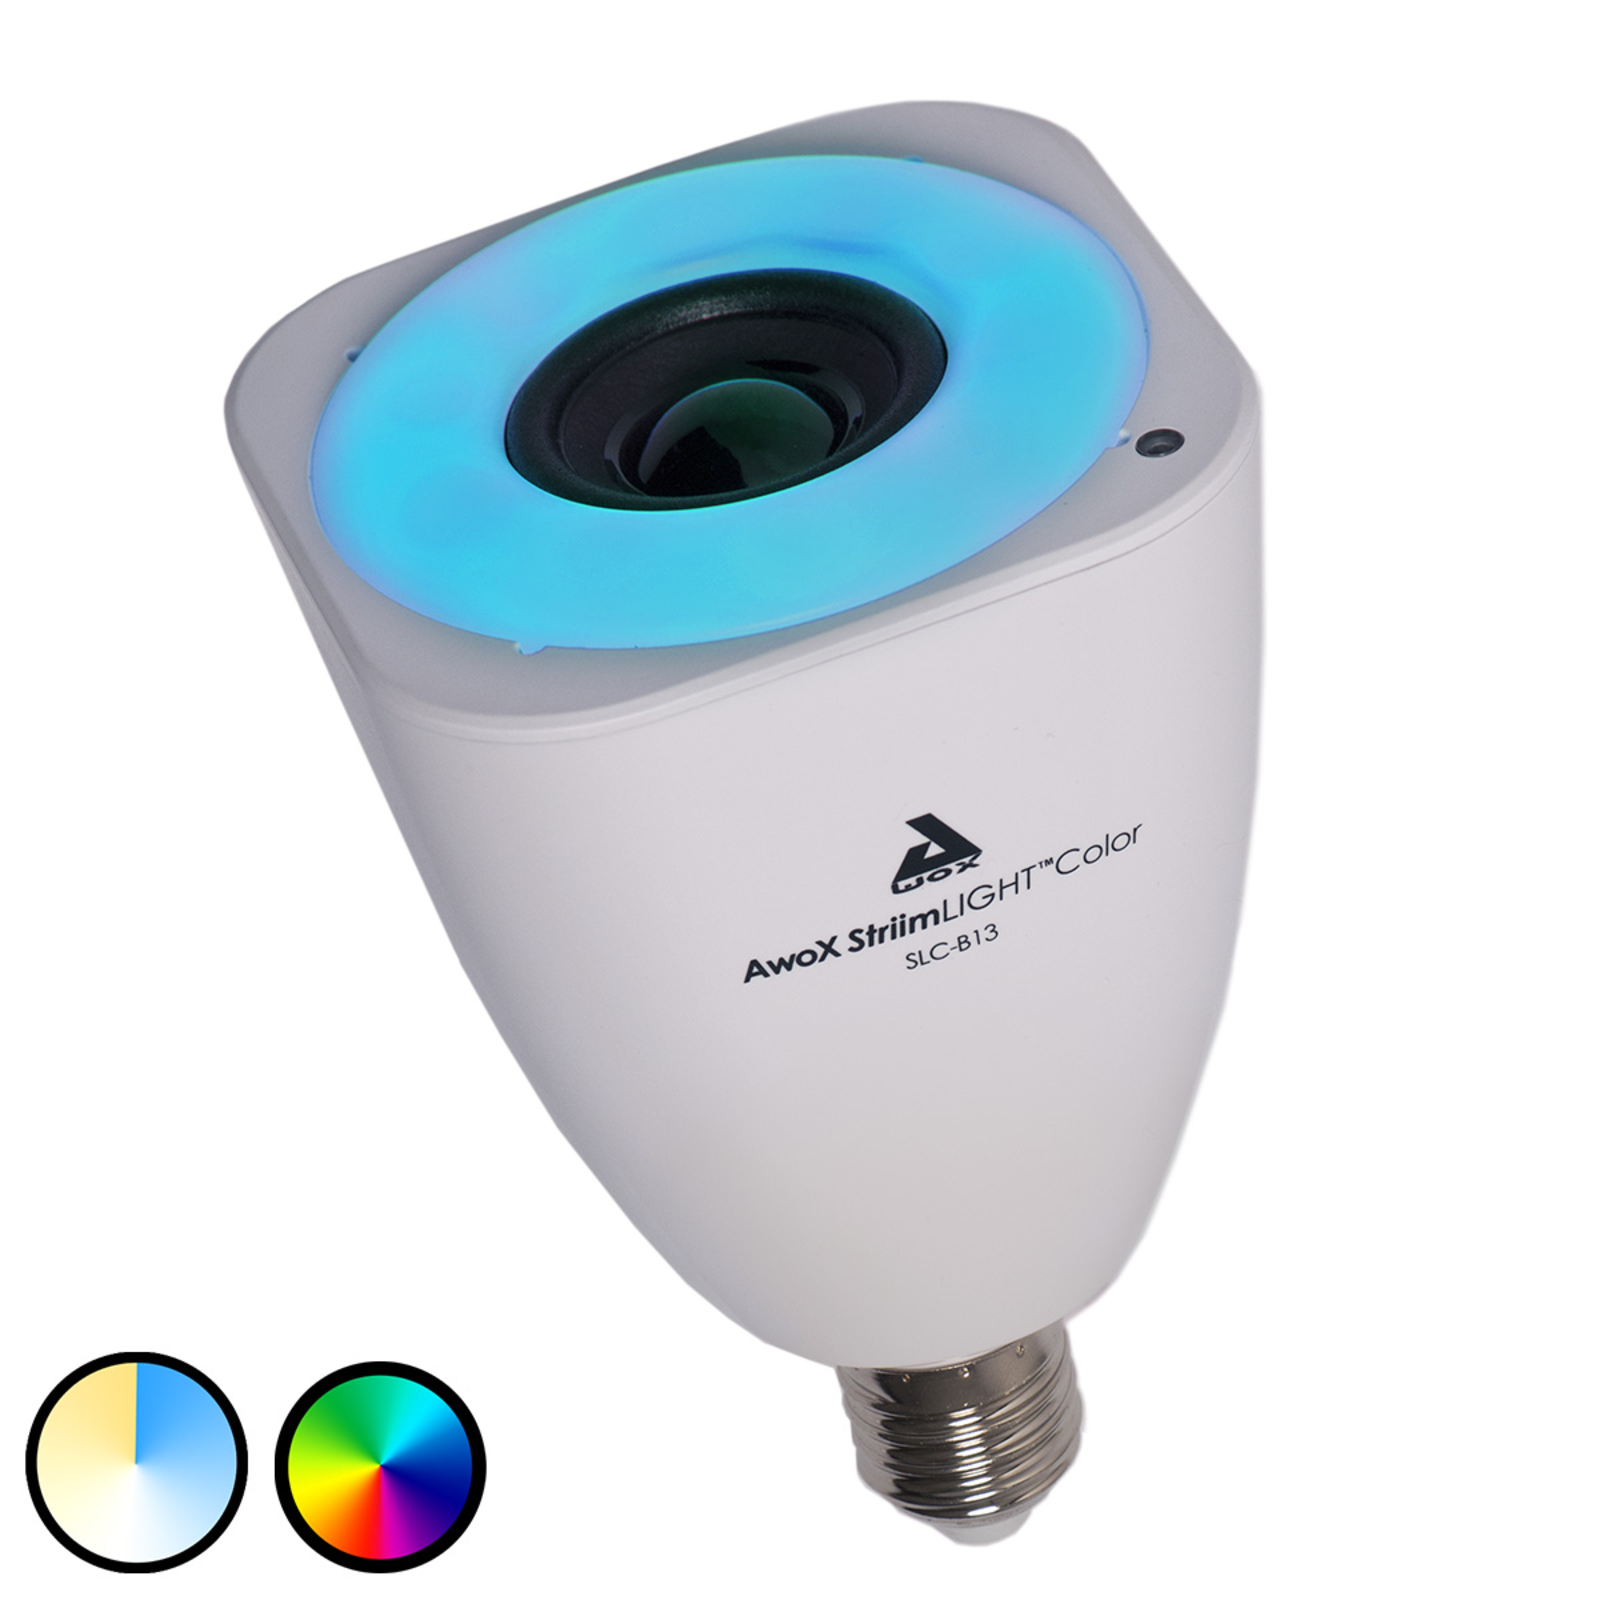 AwoX StriimLIGHT Color LED-lampa E27, Bluetooth